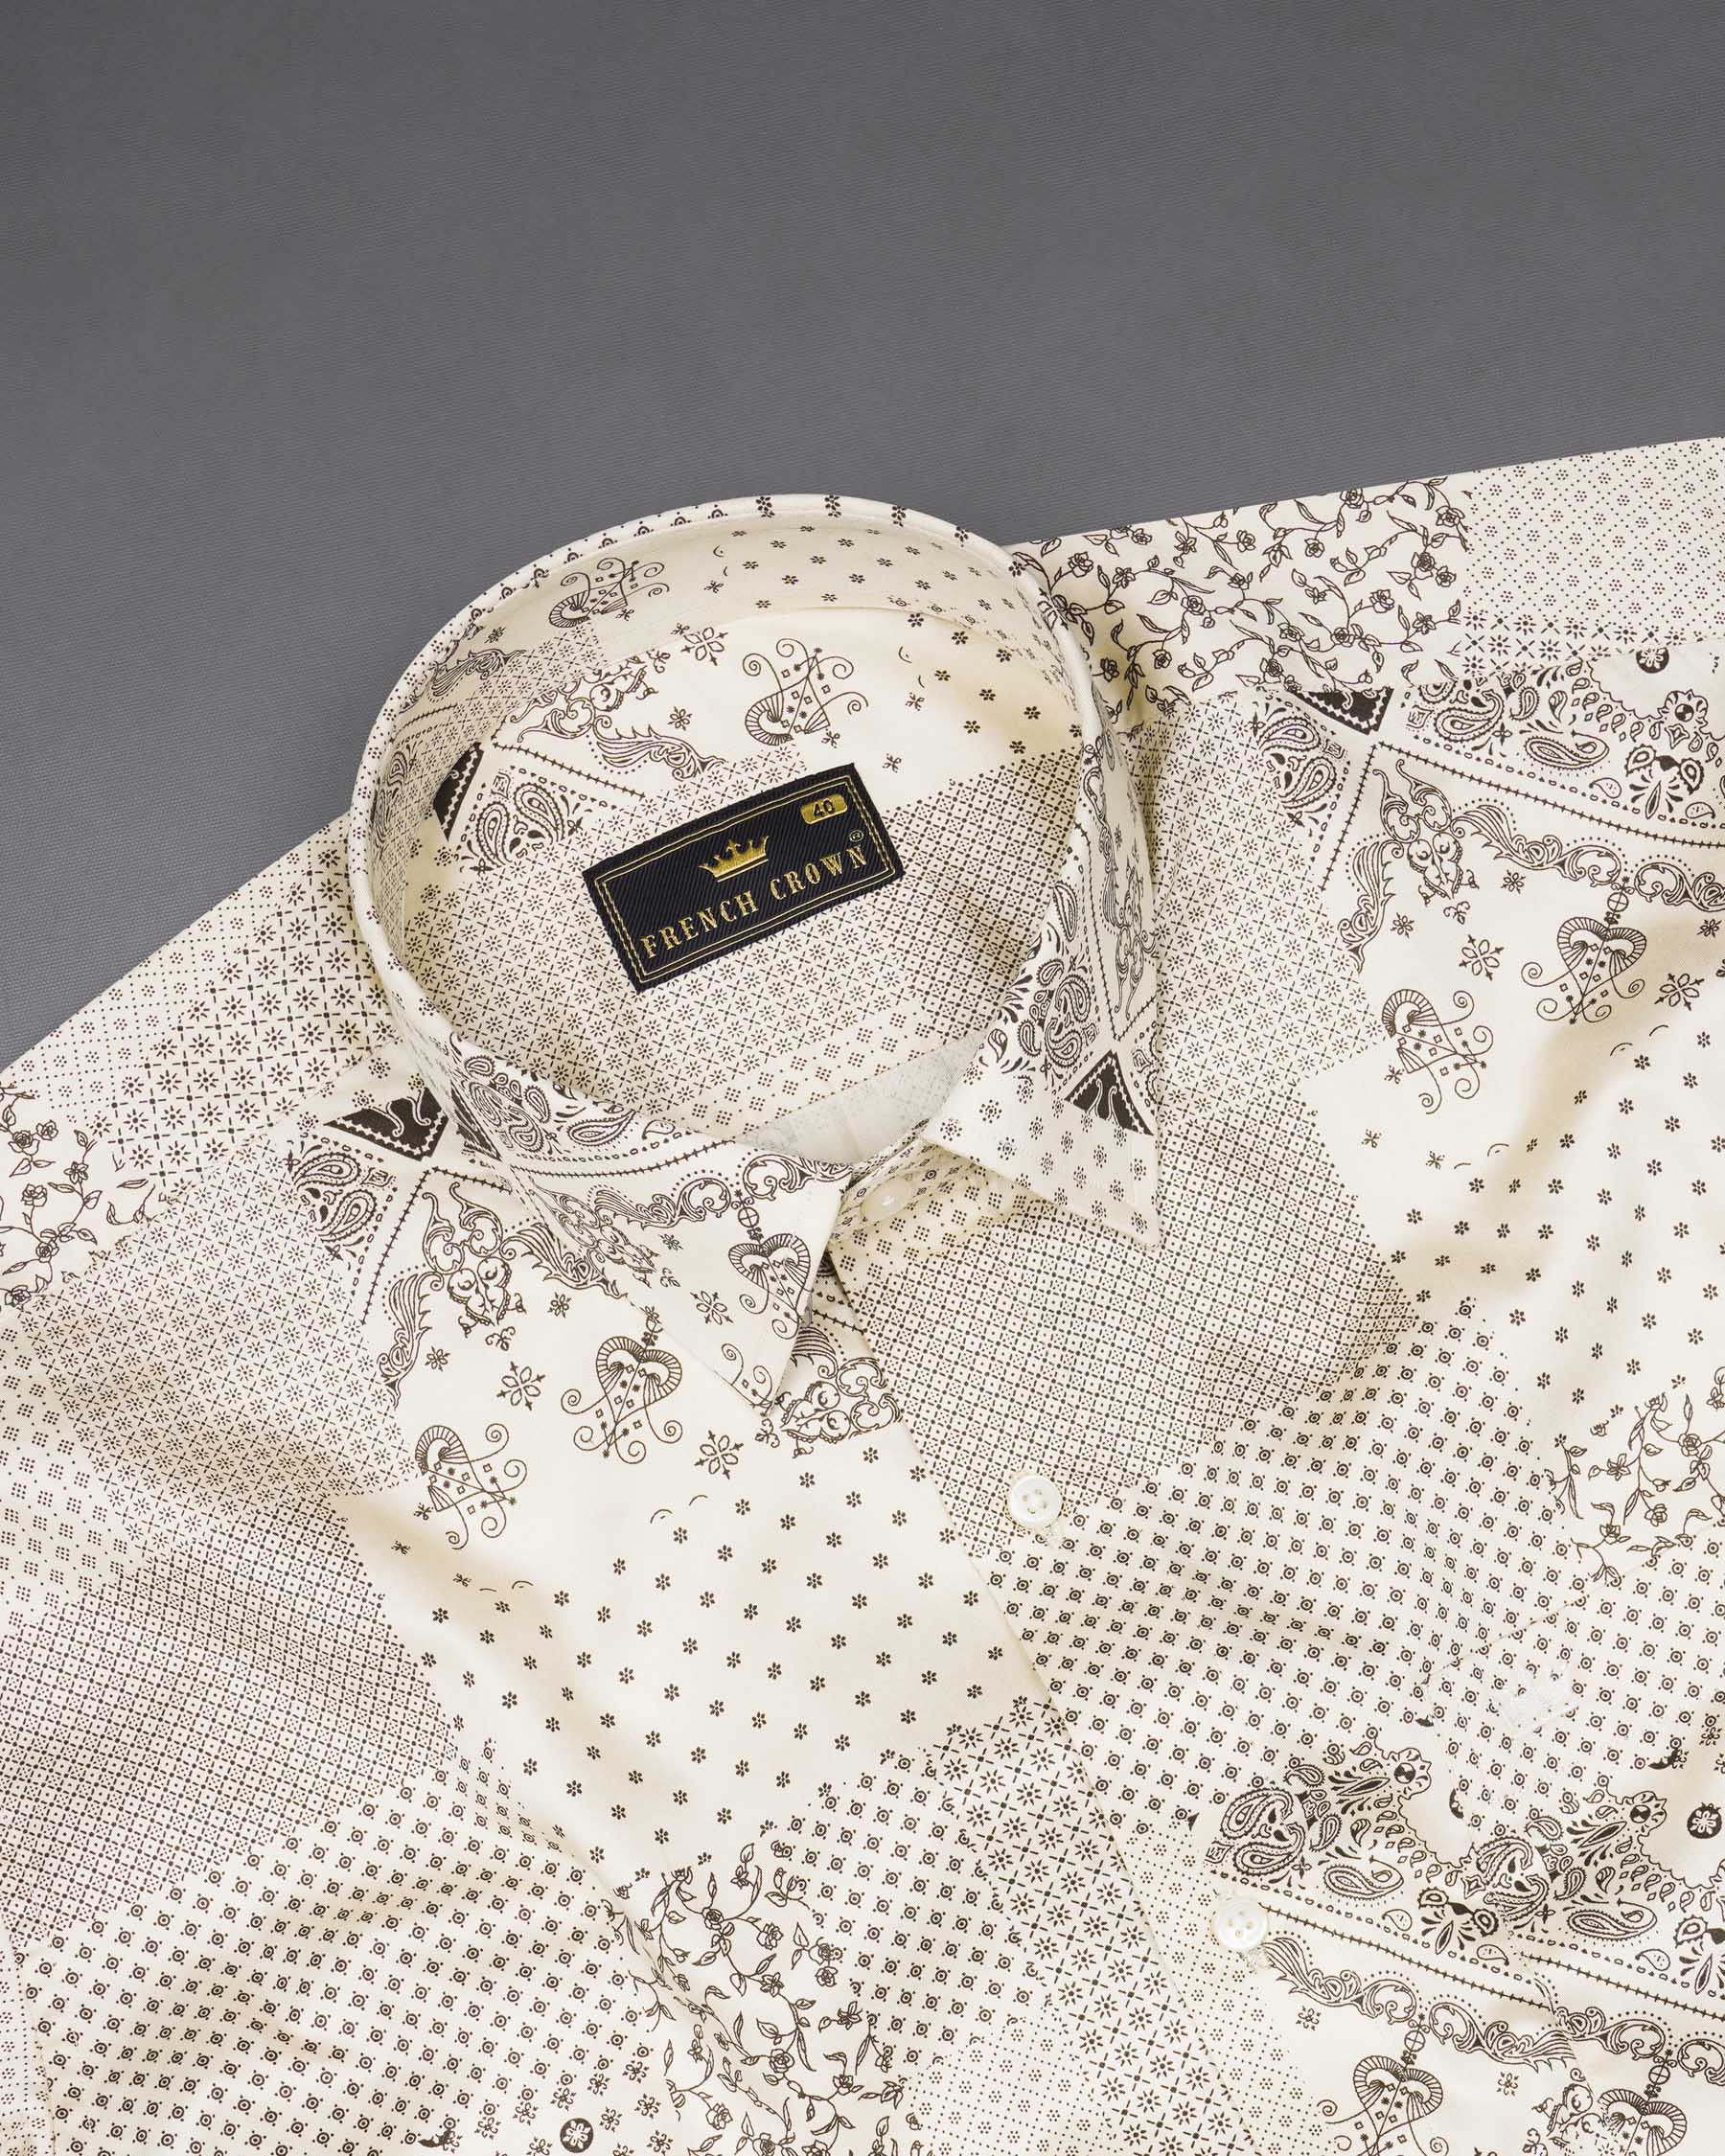 Pearl Bush Cream Boho Chic Printed Super Soft Premium Cotton Shirt 7803-38, 7803-H-38, 7803-39,7803-H-39, 7803-40, 7803-H-40, 7803-42, 7803-H-42, 7803-44, 7803-H-44, 7803-46, 7803-H-46, 7803-48, 7803-H-48, 7803-50, 7803-H-50, 7803-52, 7803-H-52